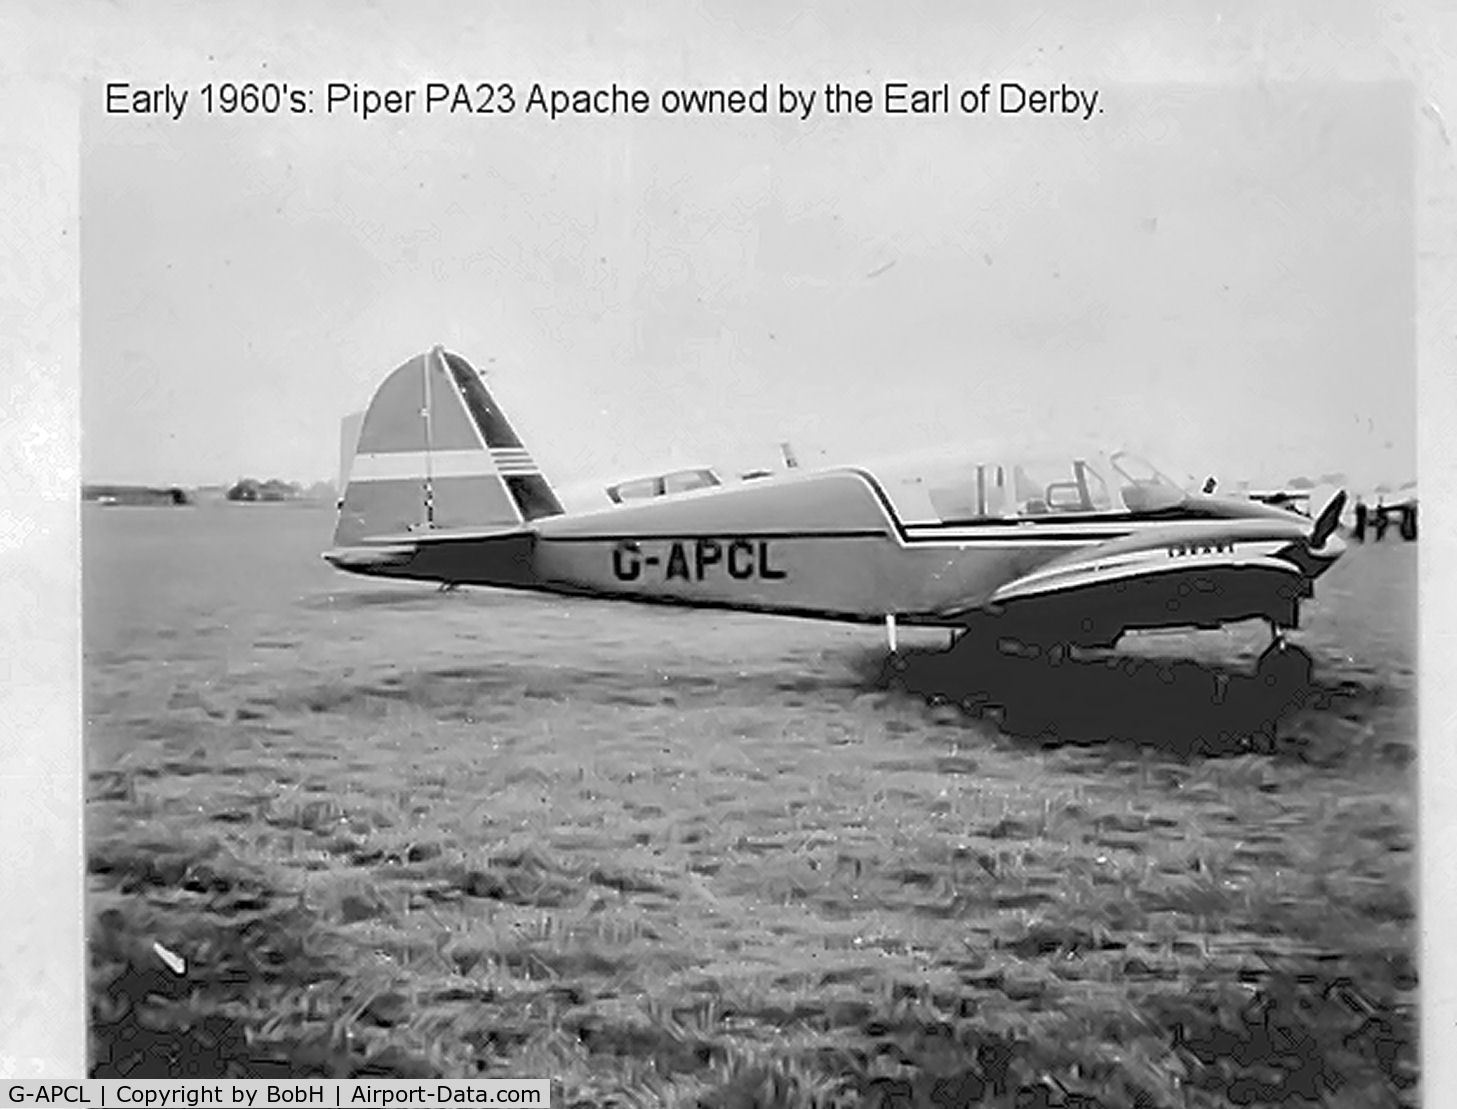 G-APCL, 1957 Piper PA-23-150 Apache C/N 23-1159, The Earl of Derby's Apache - Circa 1960